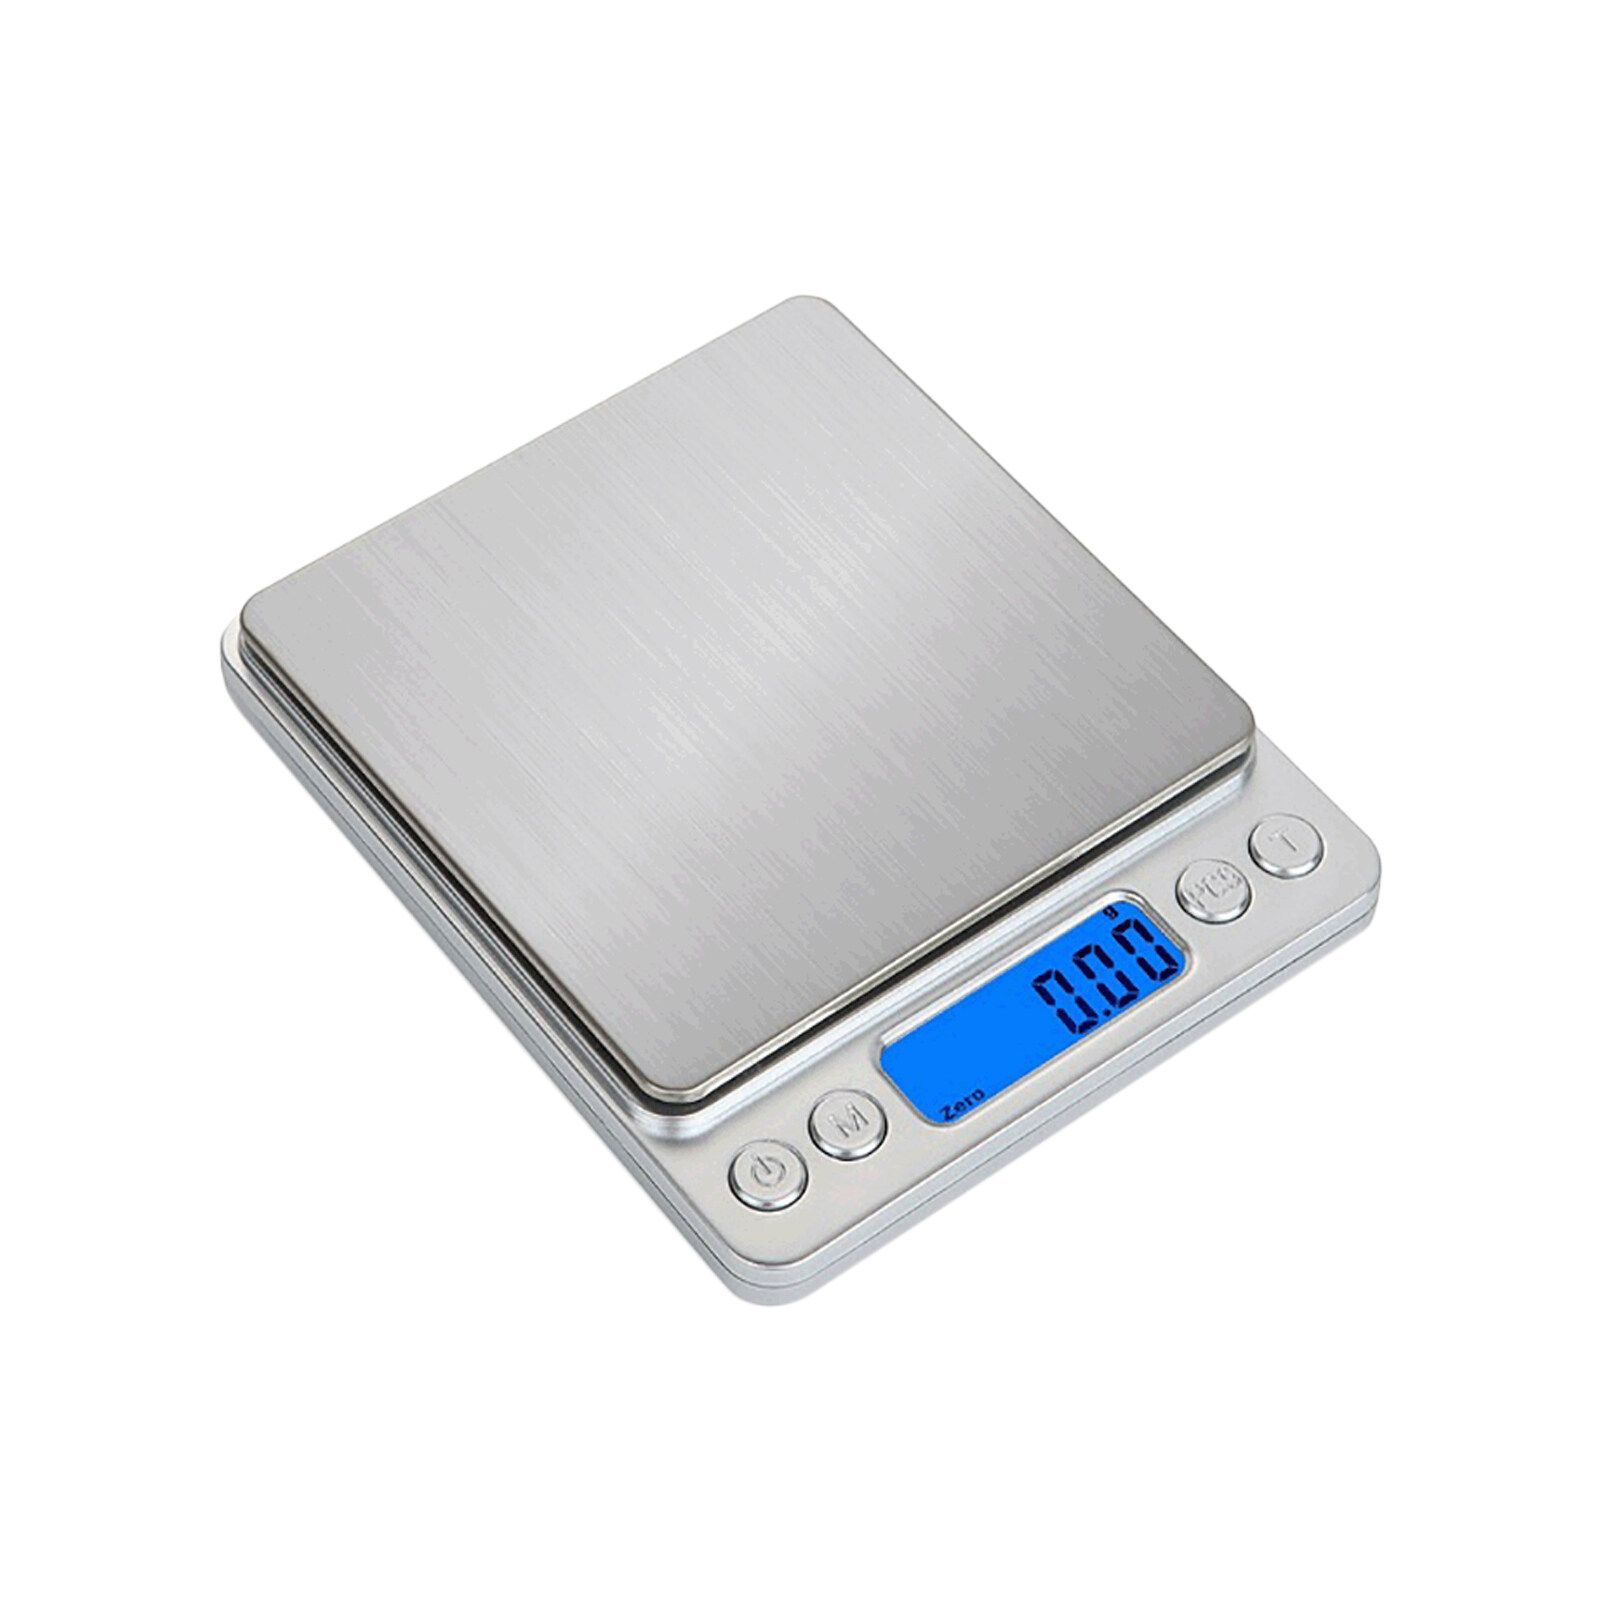 Весы ювелирные, 500гр 0.01гр. Digital Scale весы 500г. Электронные весы 0.1-500гр. Весы цифровые 2000г\0,1г.